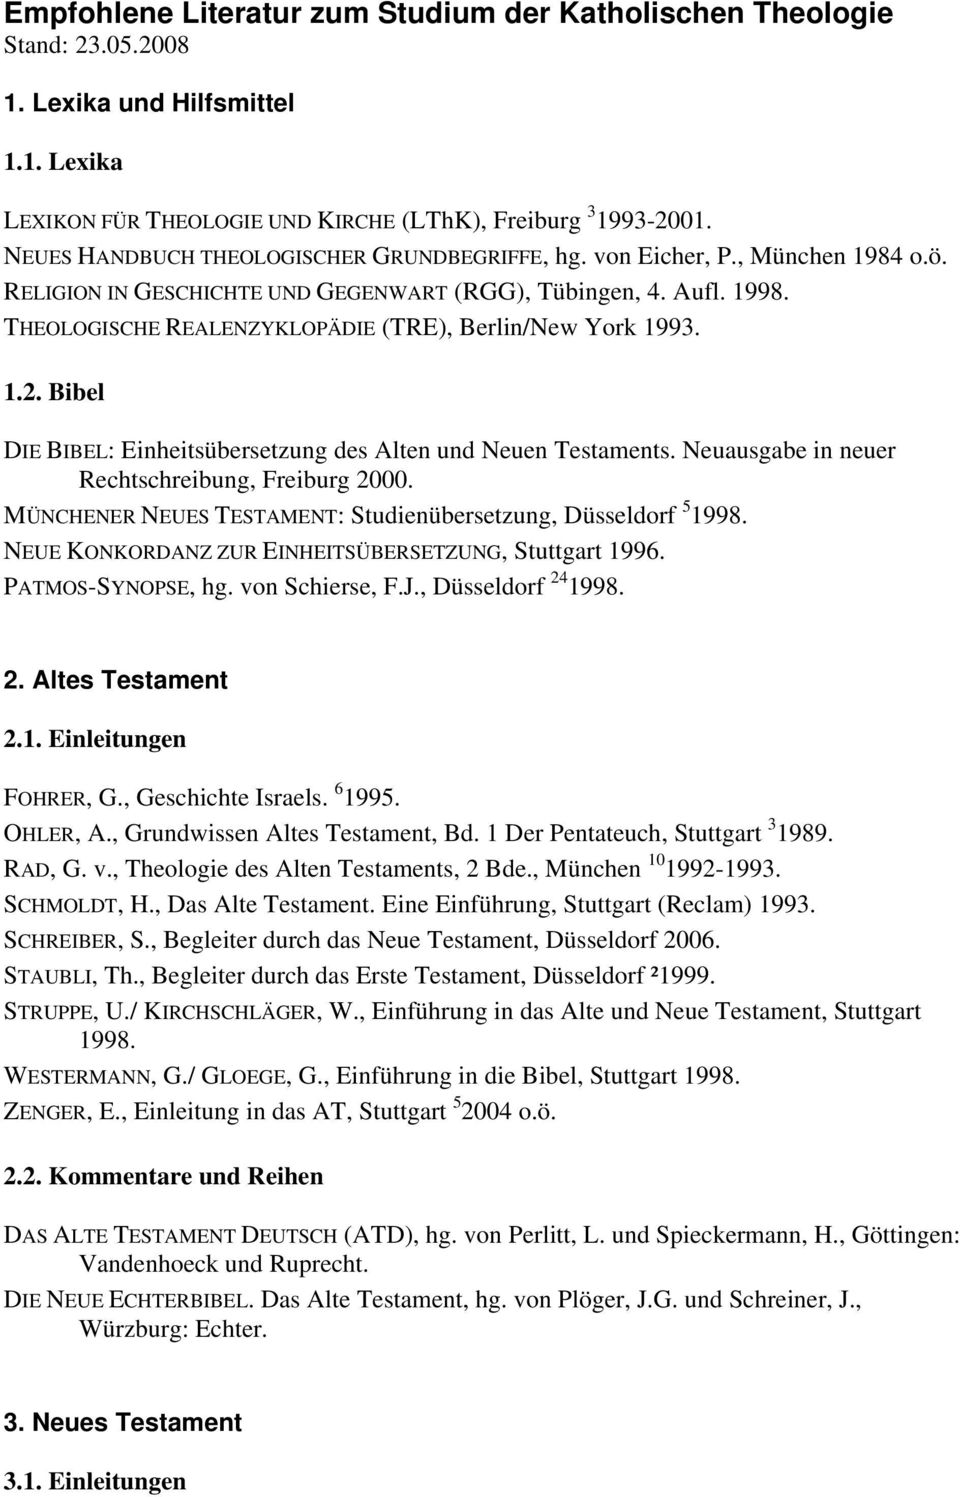 THEOLOGISCHE REALENZYKLOPÄDIE (TRE), Berlin/New York 1993. 1.2. Bibel DIE BIBEL: Einheitsübersetzung des Alten und Neuen Testaments. Neuausgabe in neuer Rechtschreibung, Freiburg 2000.